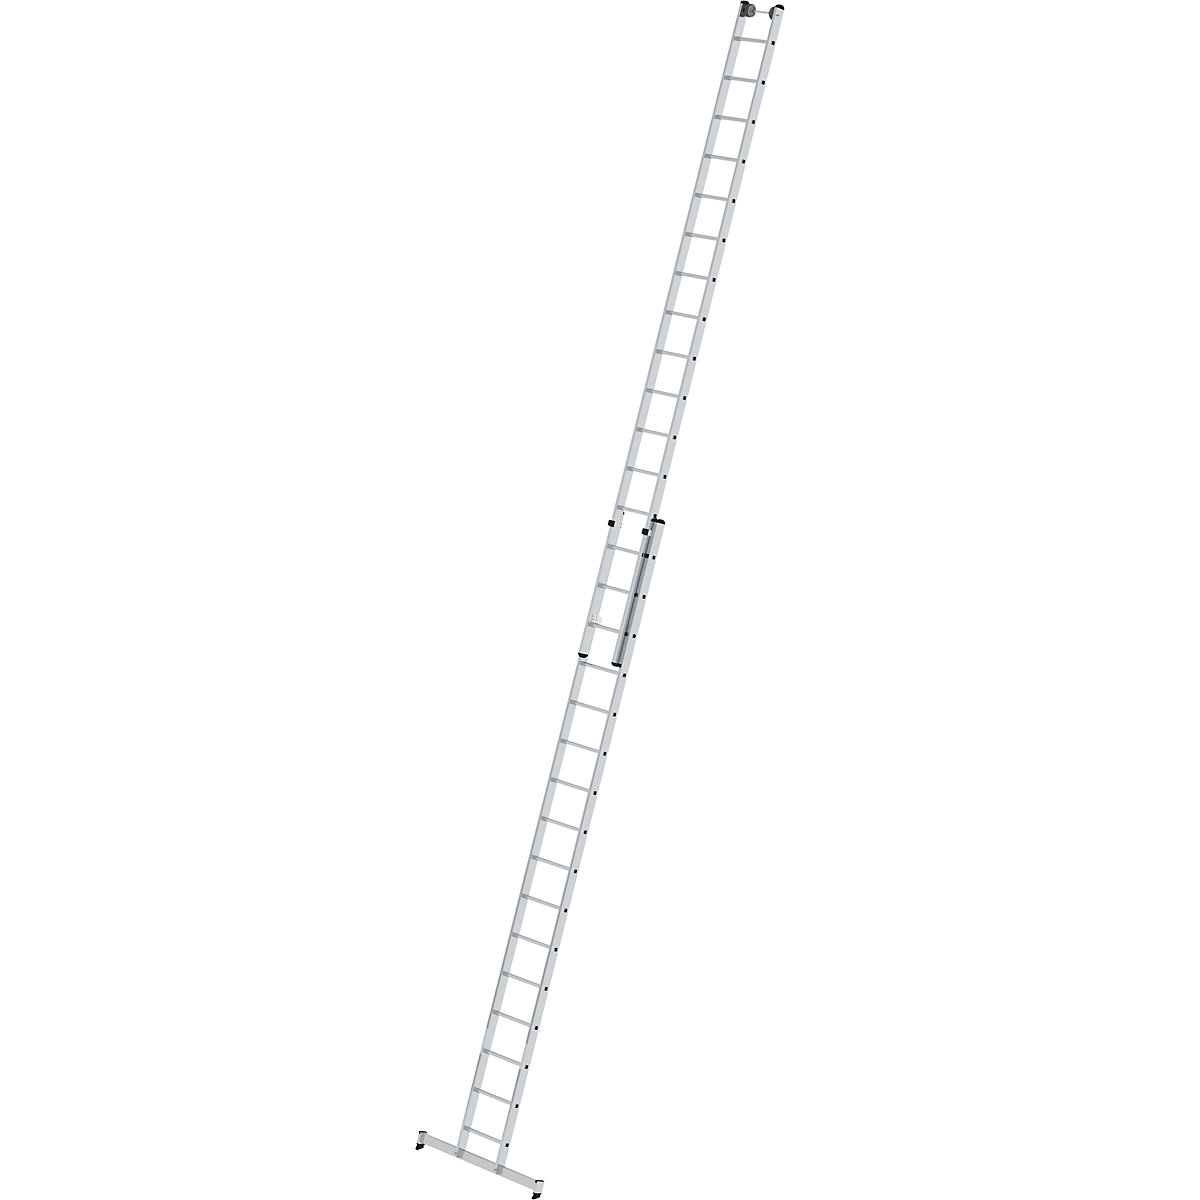 Escalera de mano de altura regulable – MUNK, escalera extensible de 2 tramos, 2 x 16 peldaños estrechos, con traviesa nivello®-7